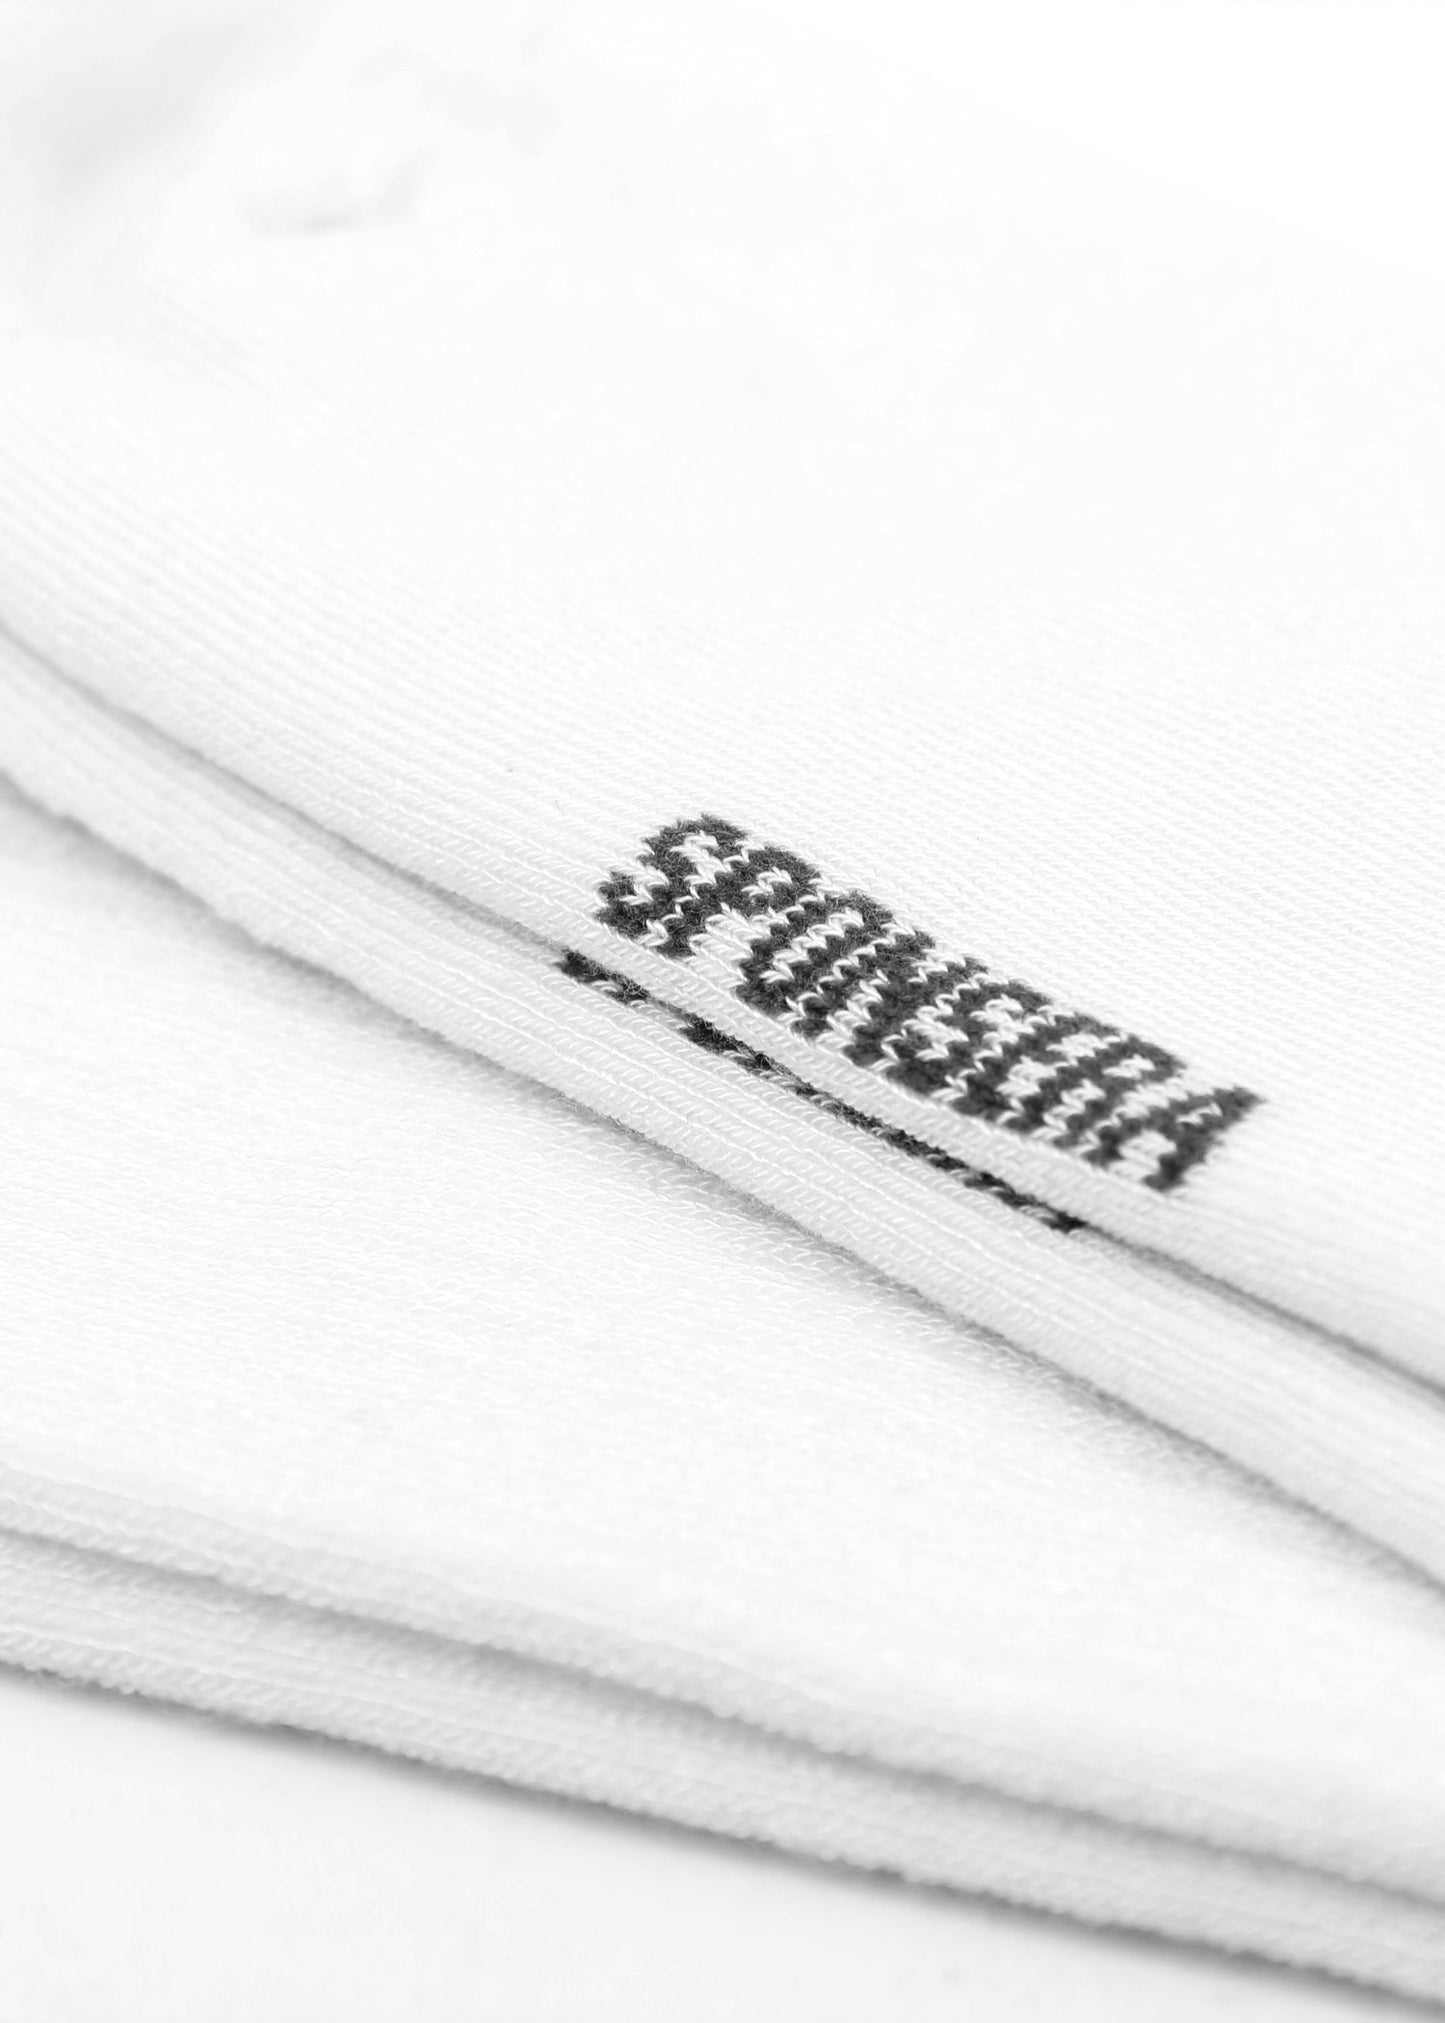 SPONSERA Hvide bambus tennissokker - 25 par - Str. 38-45